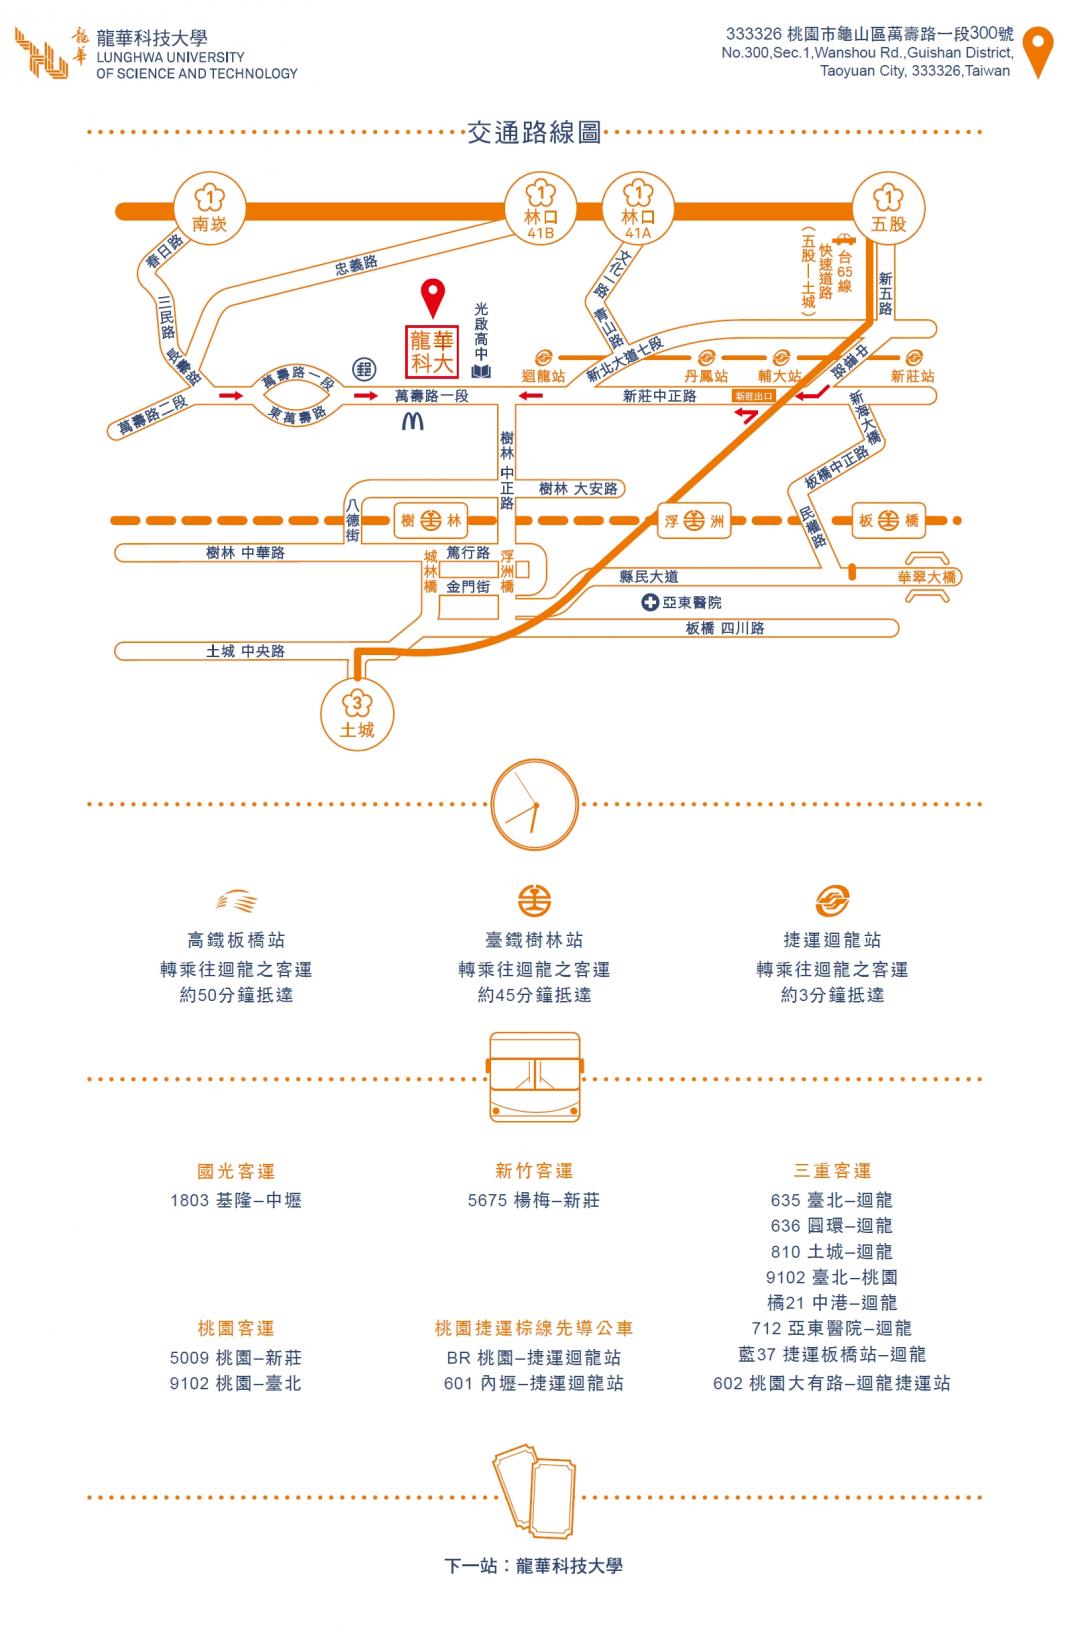 交通路線解說圖片1；來源：龍華科技大學